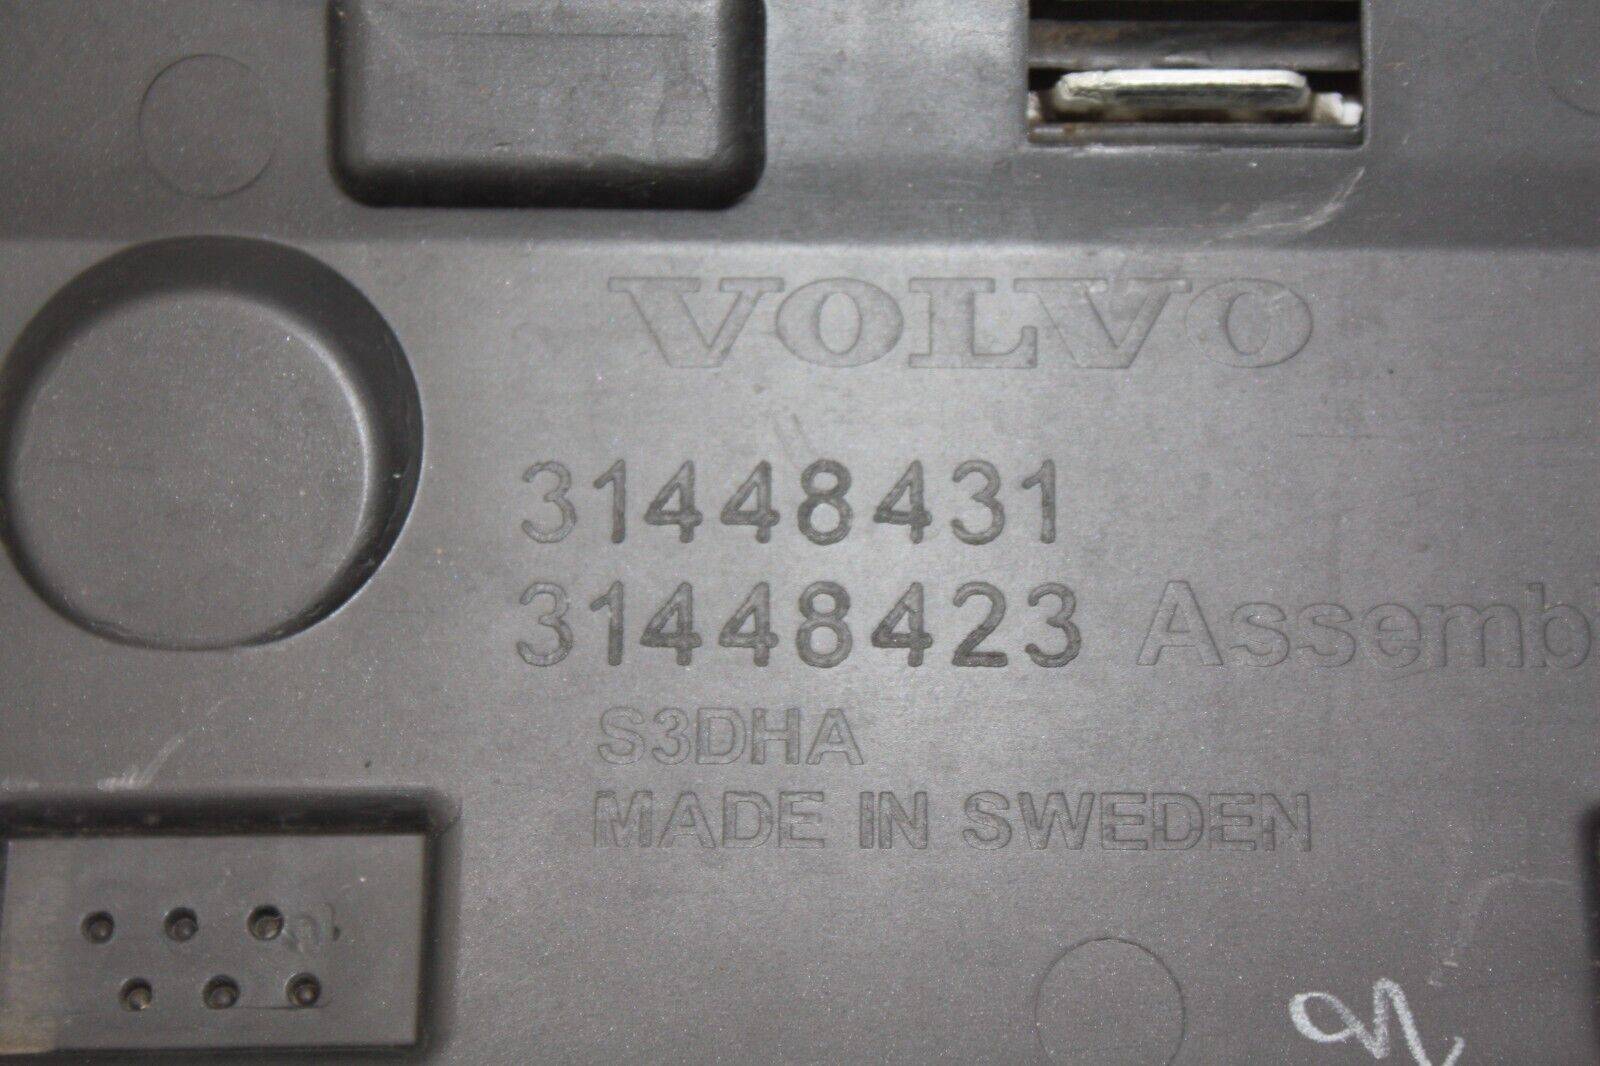 Volvo-XC90-Rear-Left-Door-Moulding-31448431-Genuine-176440393766-10